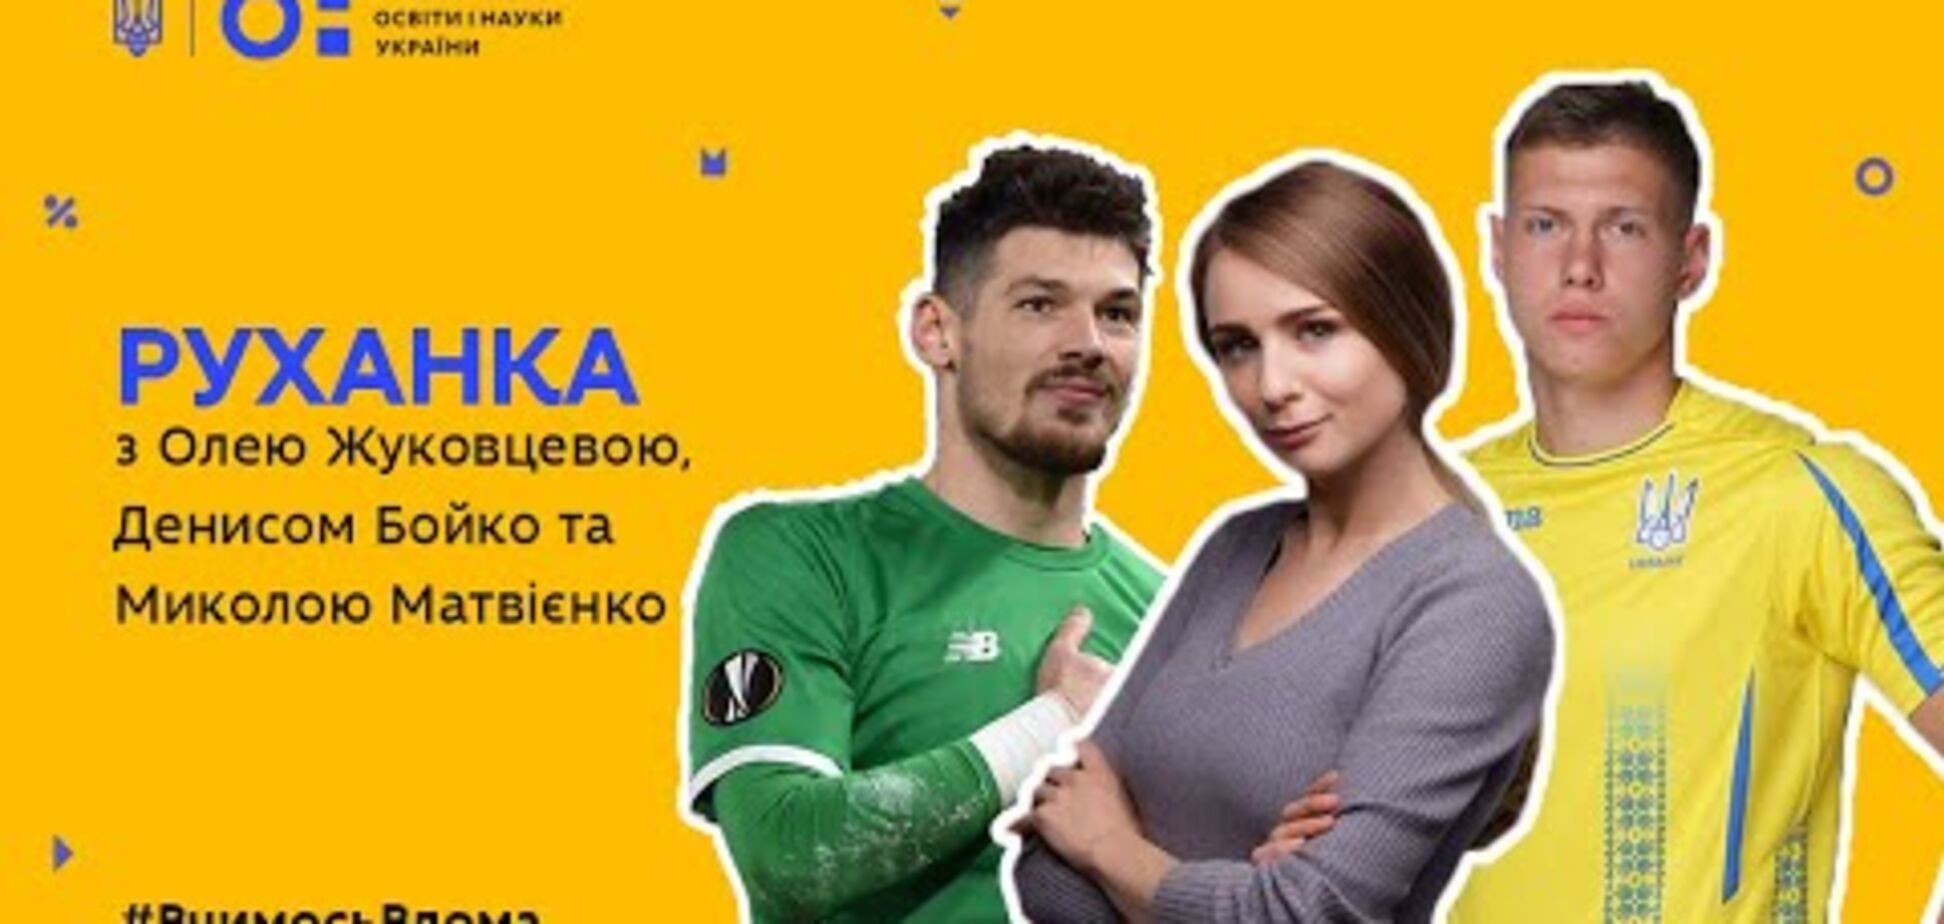 Минобразования опозорилось с футболистами сборной Украины - фотофакт